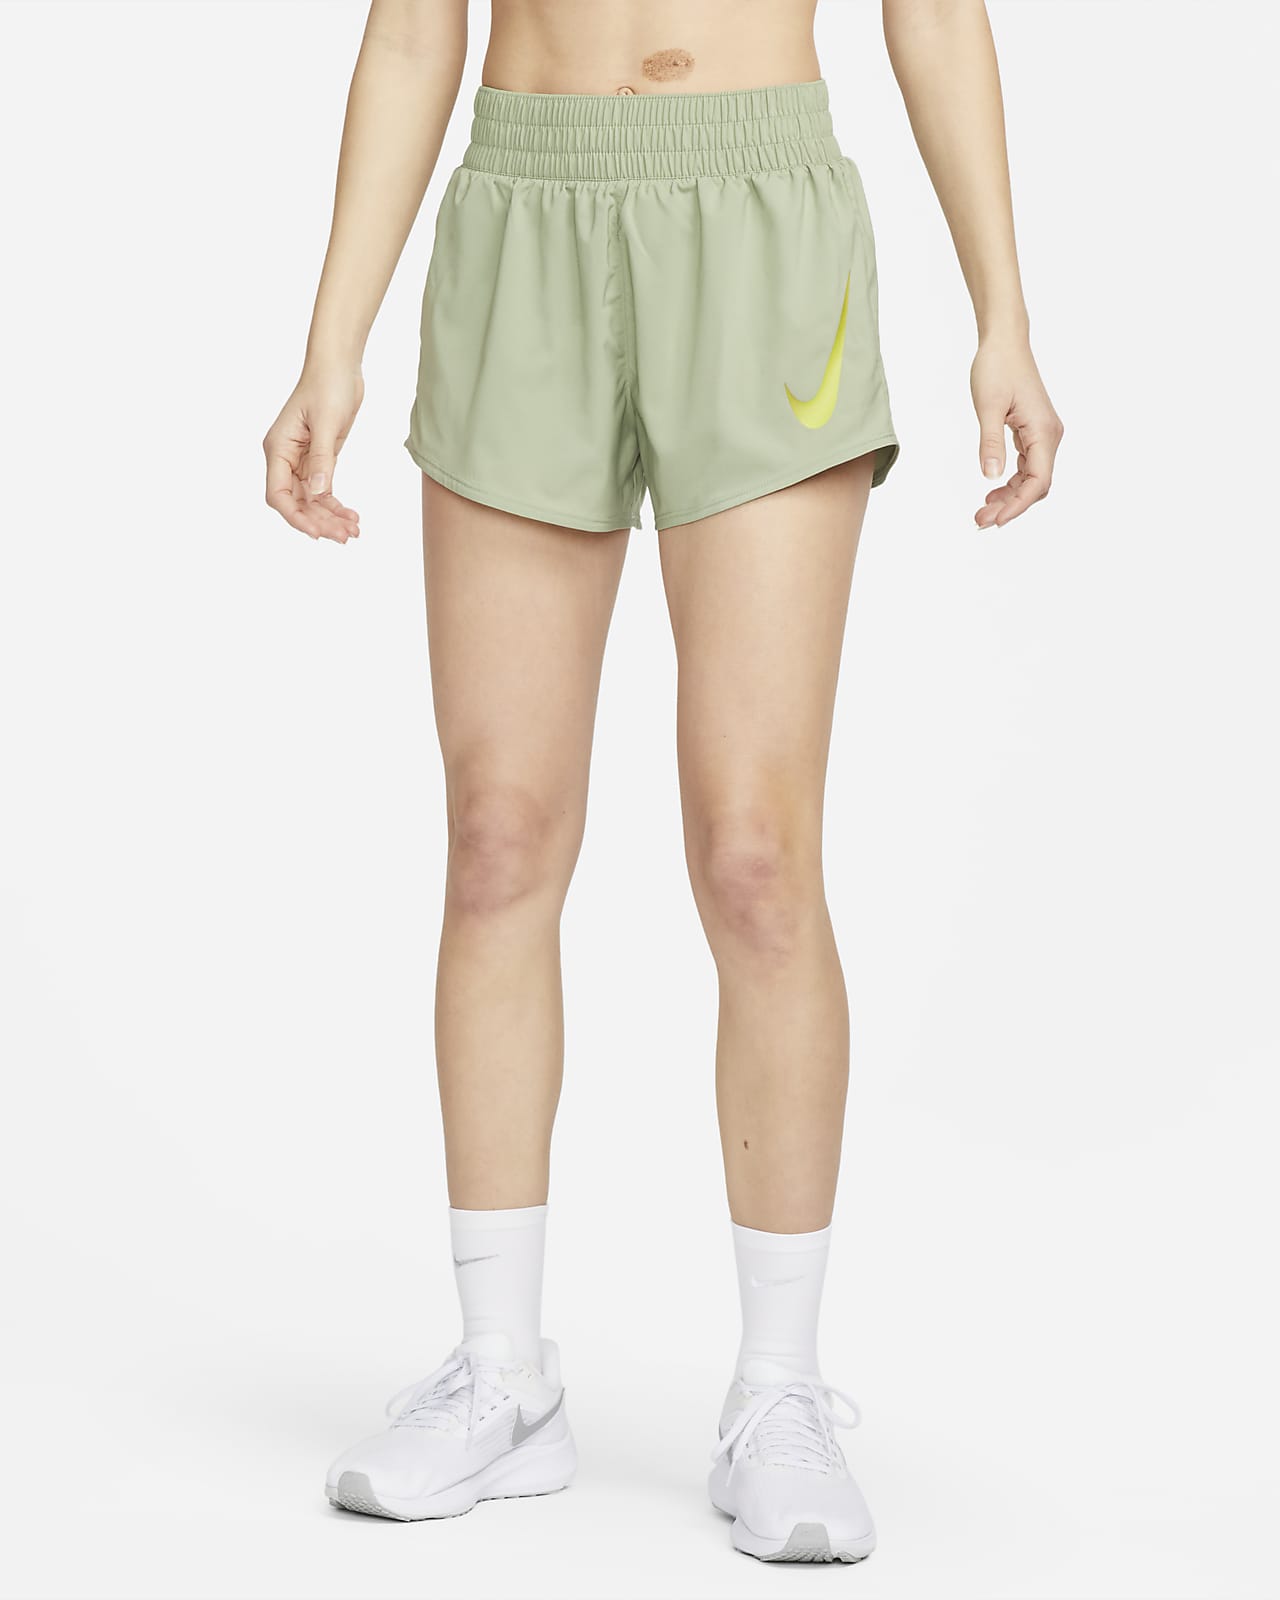 Dámské běžecké kraťasy Nike Swoosh s všitými kalhotkami